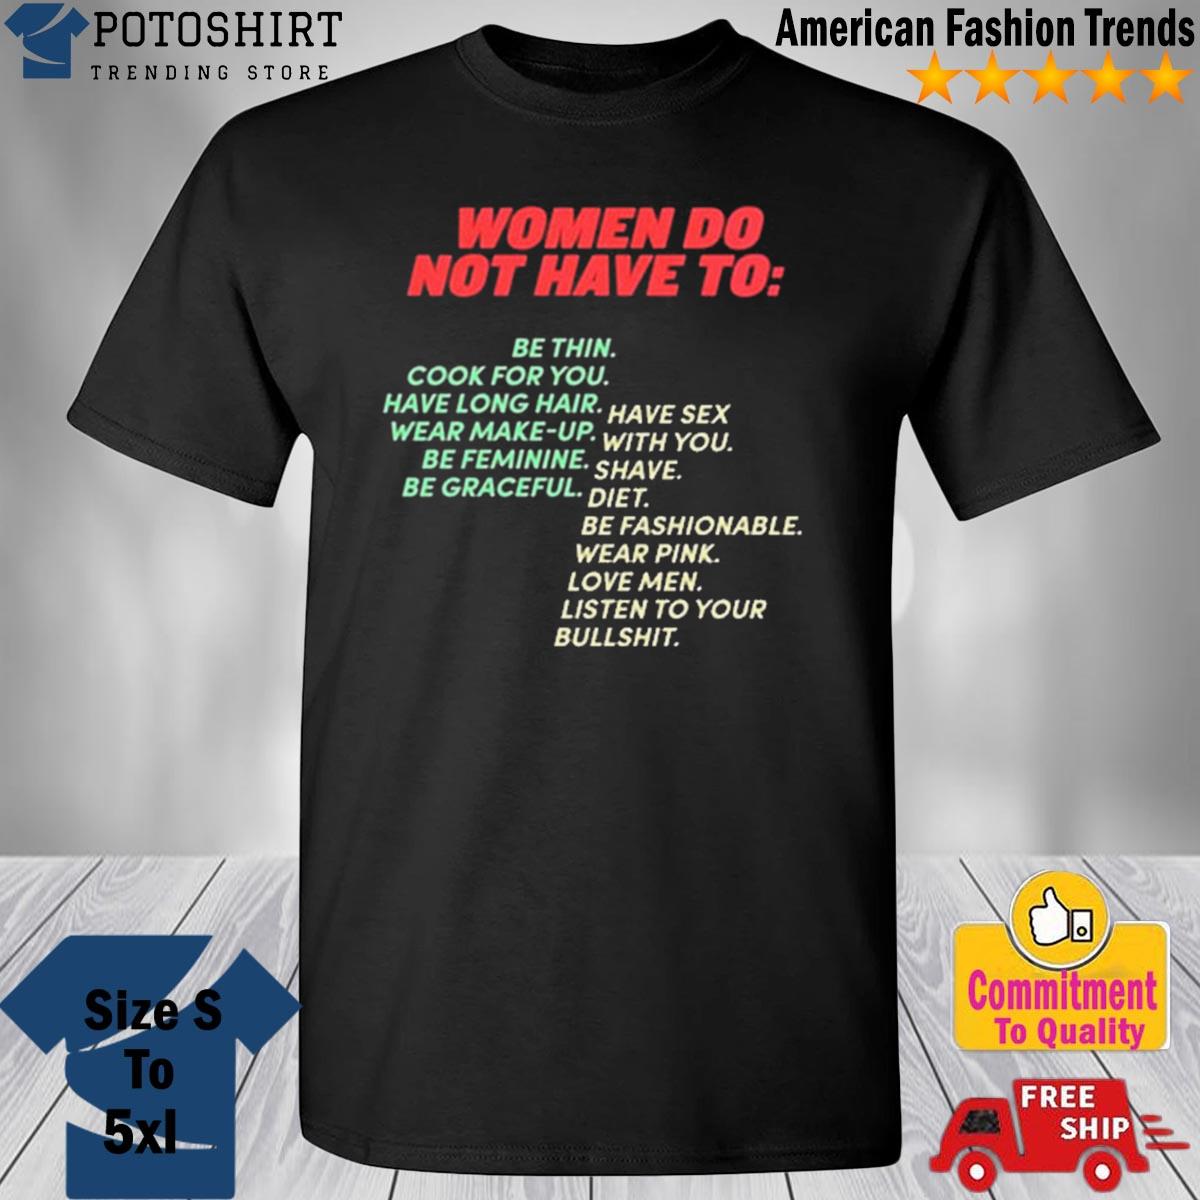 Thirtynineseven Merch Pro-Women shirt